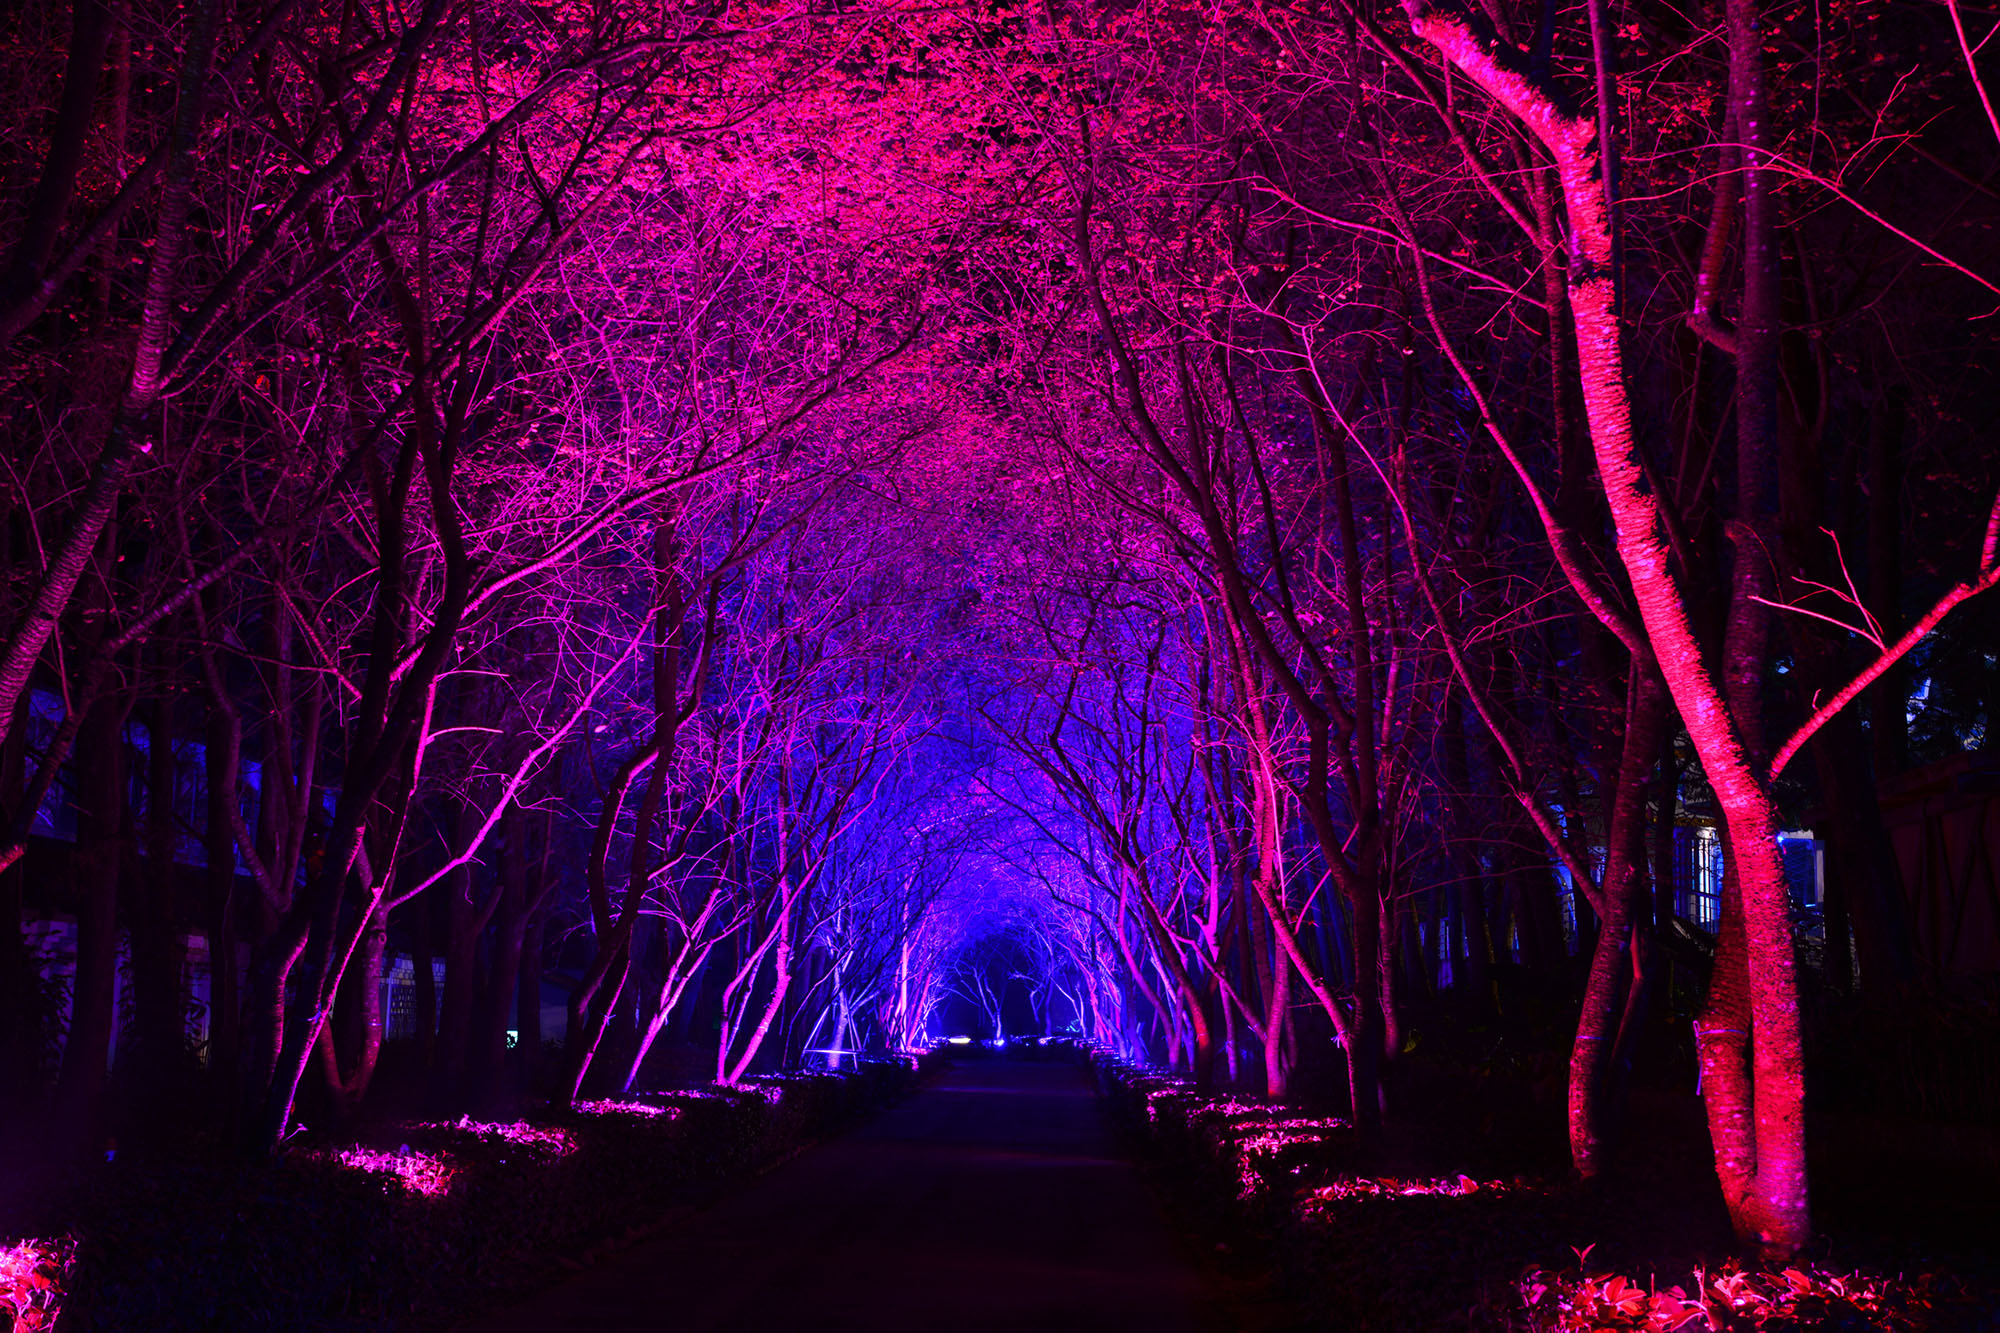 Visit the Illuminated Arboretum